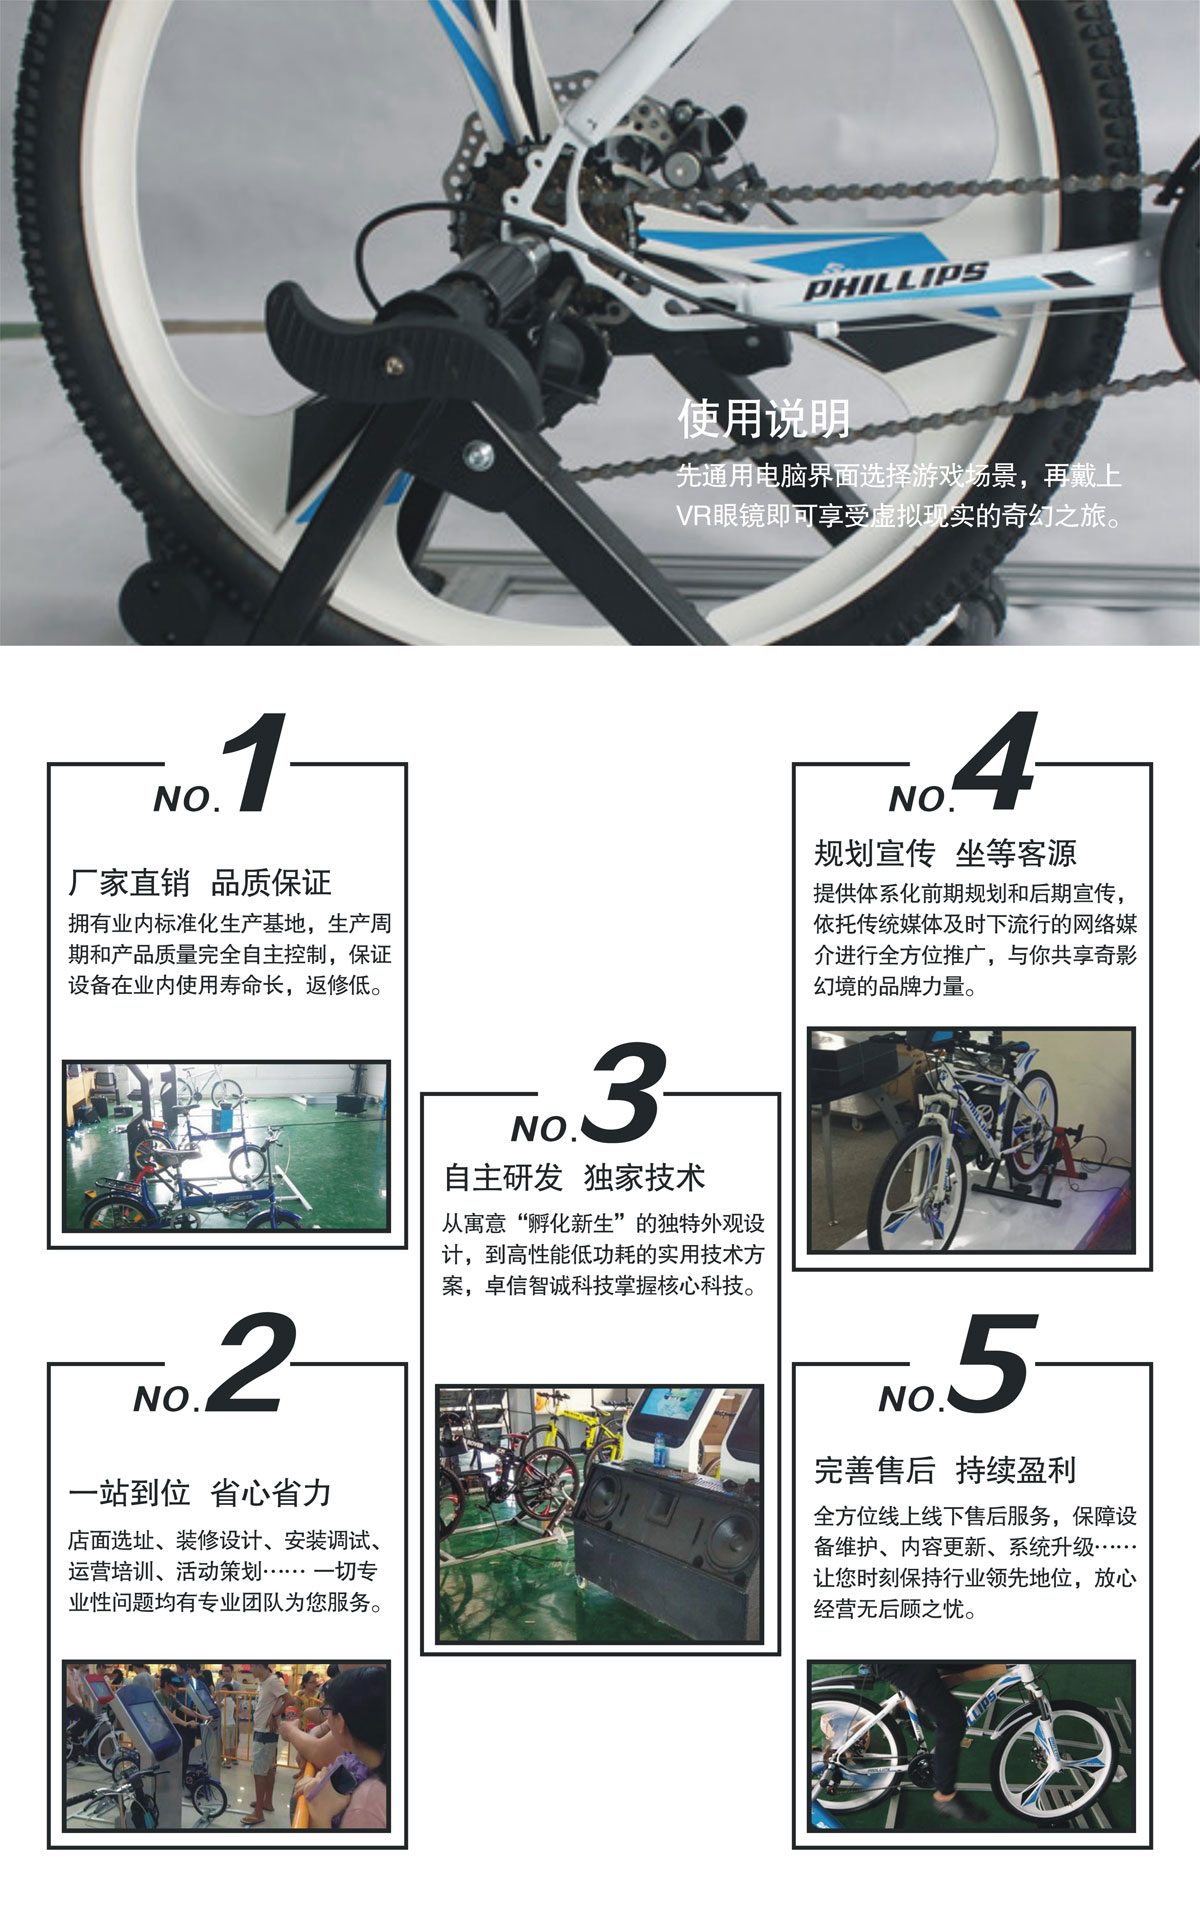 互动电影VR自行车使用说明.jpg